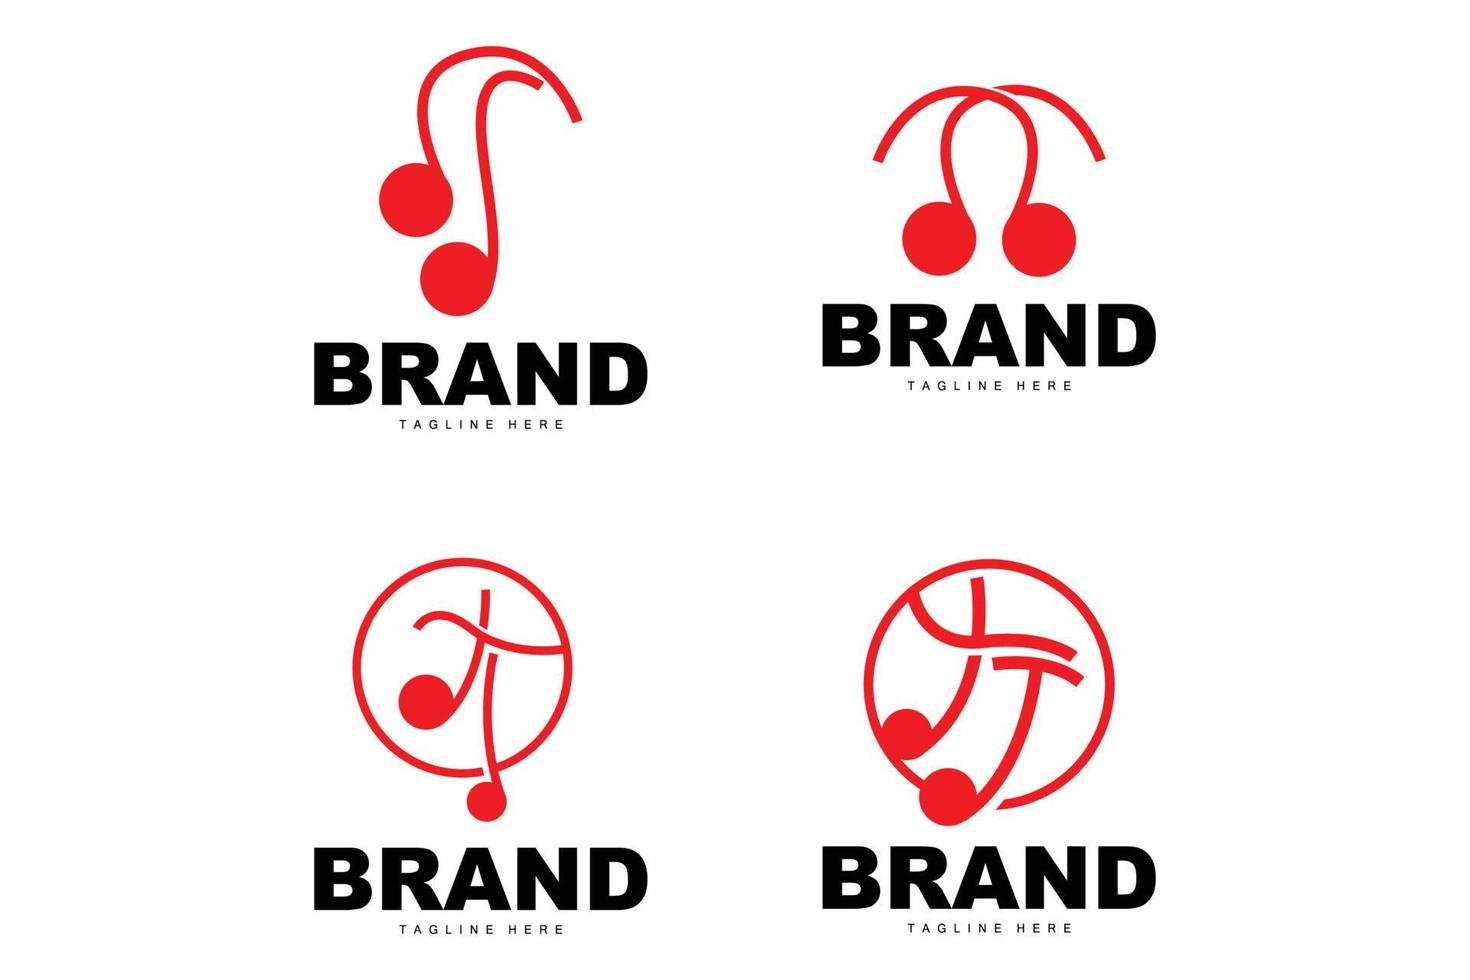 semplice musica ritmo logo, musicale Nota canzone tono vettore design